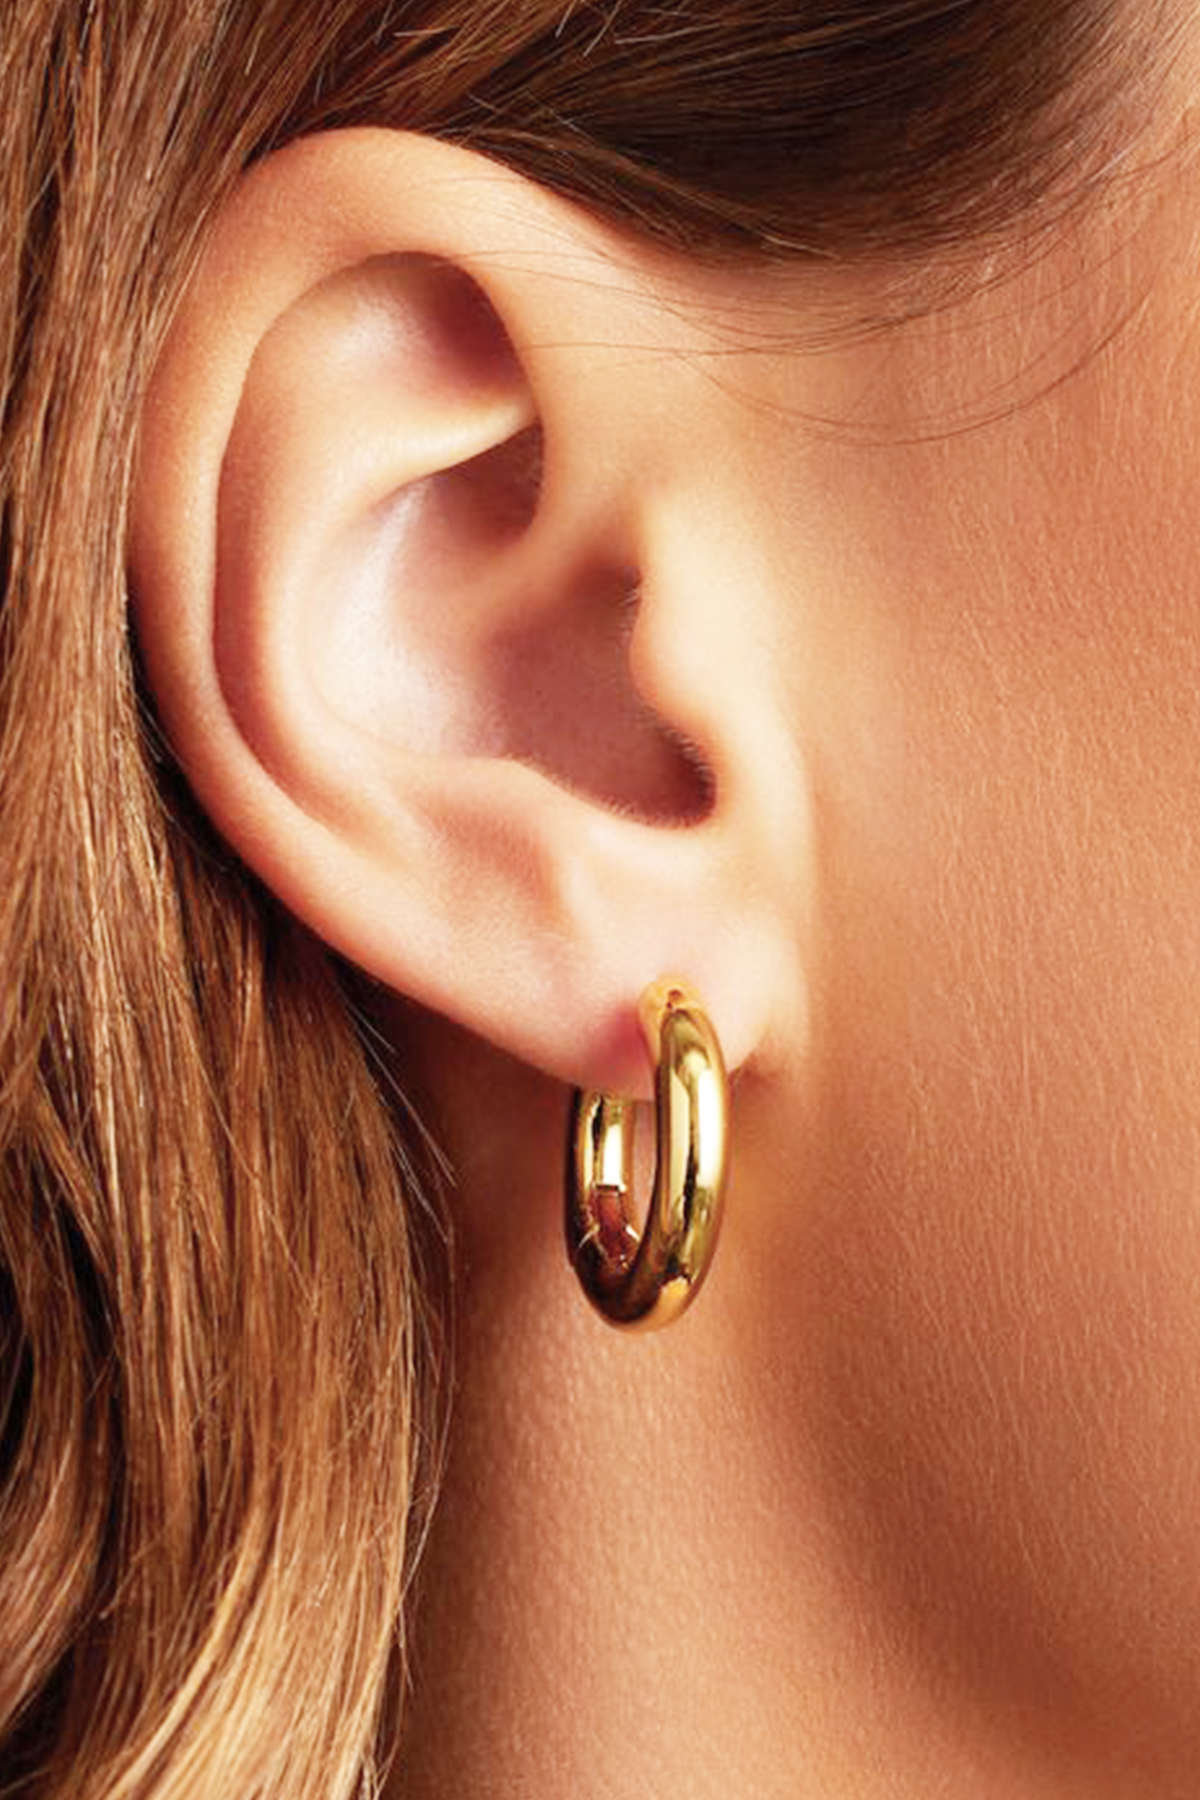 Simple hoop earrings, Gold - 25 mm